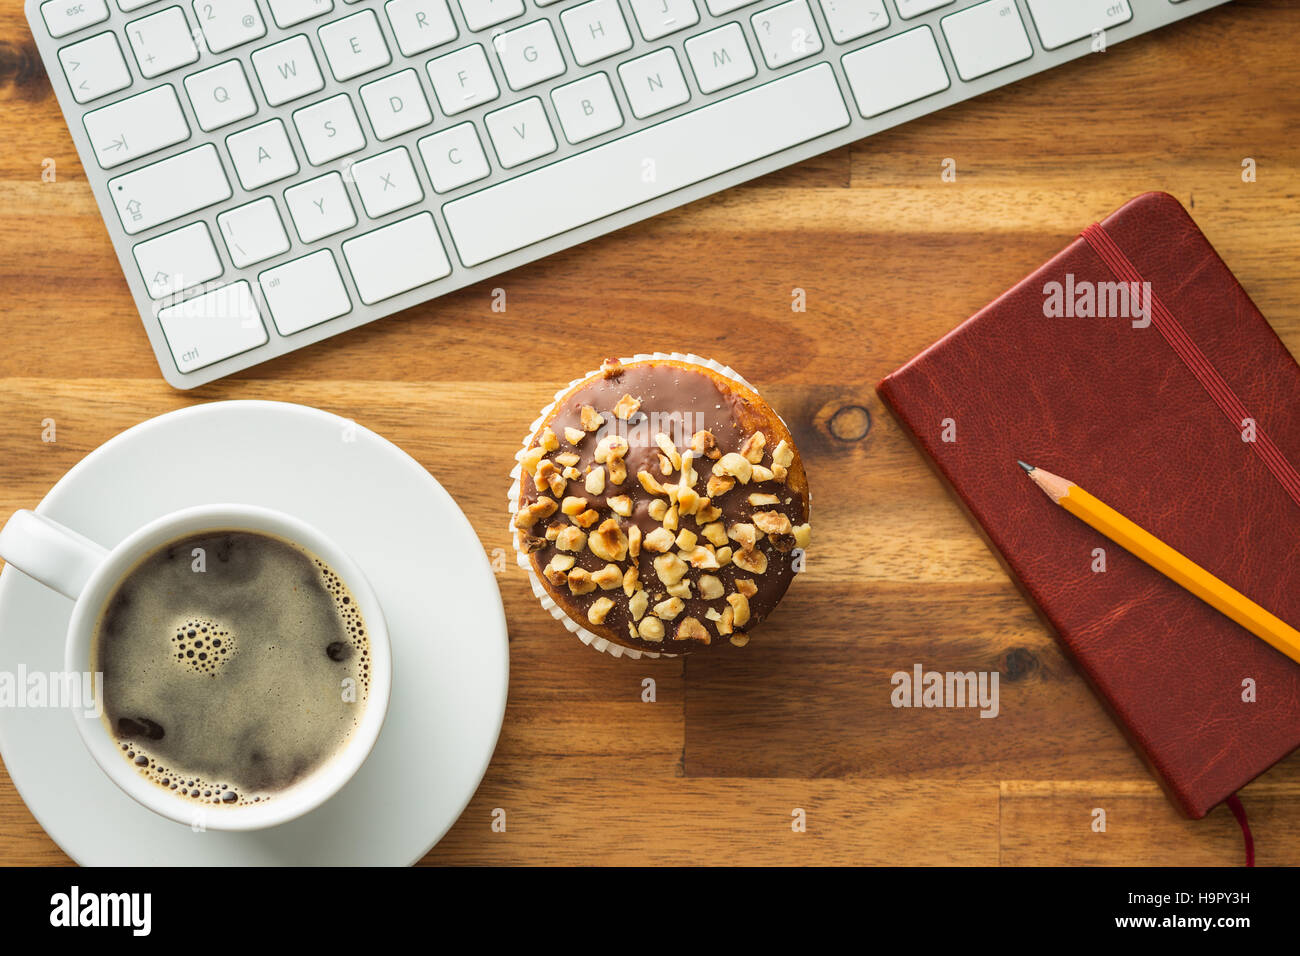 Pause pour le café et un muffin au bureau. Concept avec café, muffins et clavier de l'ordinateur. Banque D'Images